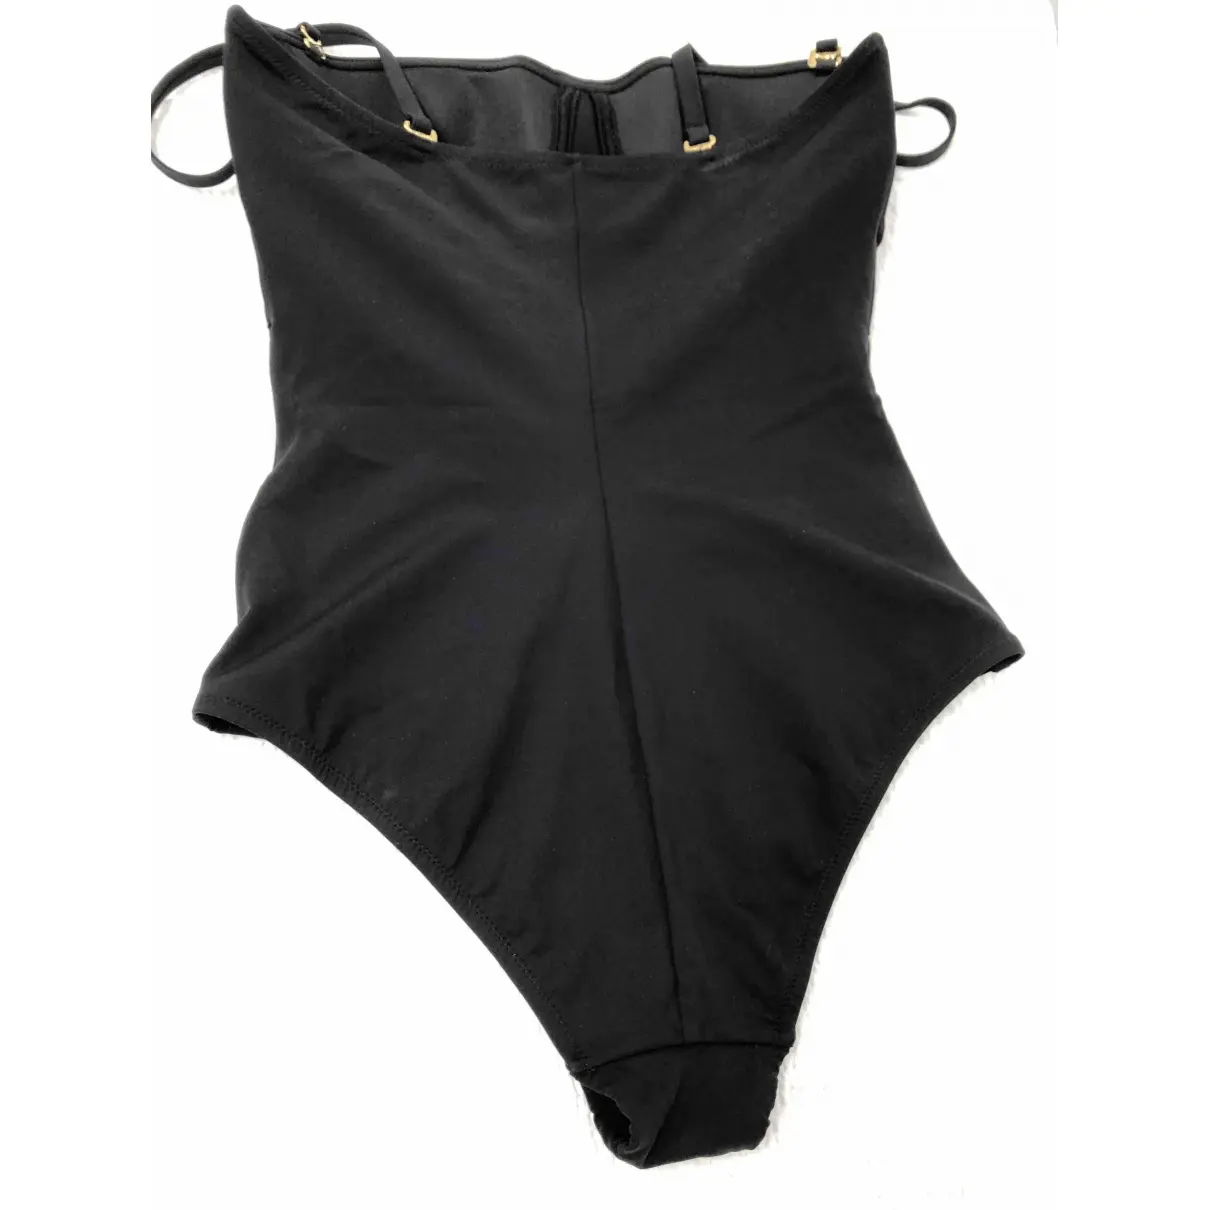 La Perla One-piece swimsuit for sale